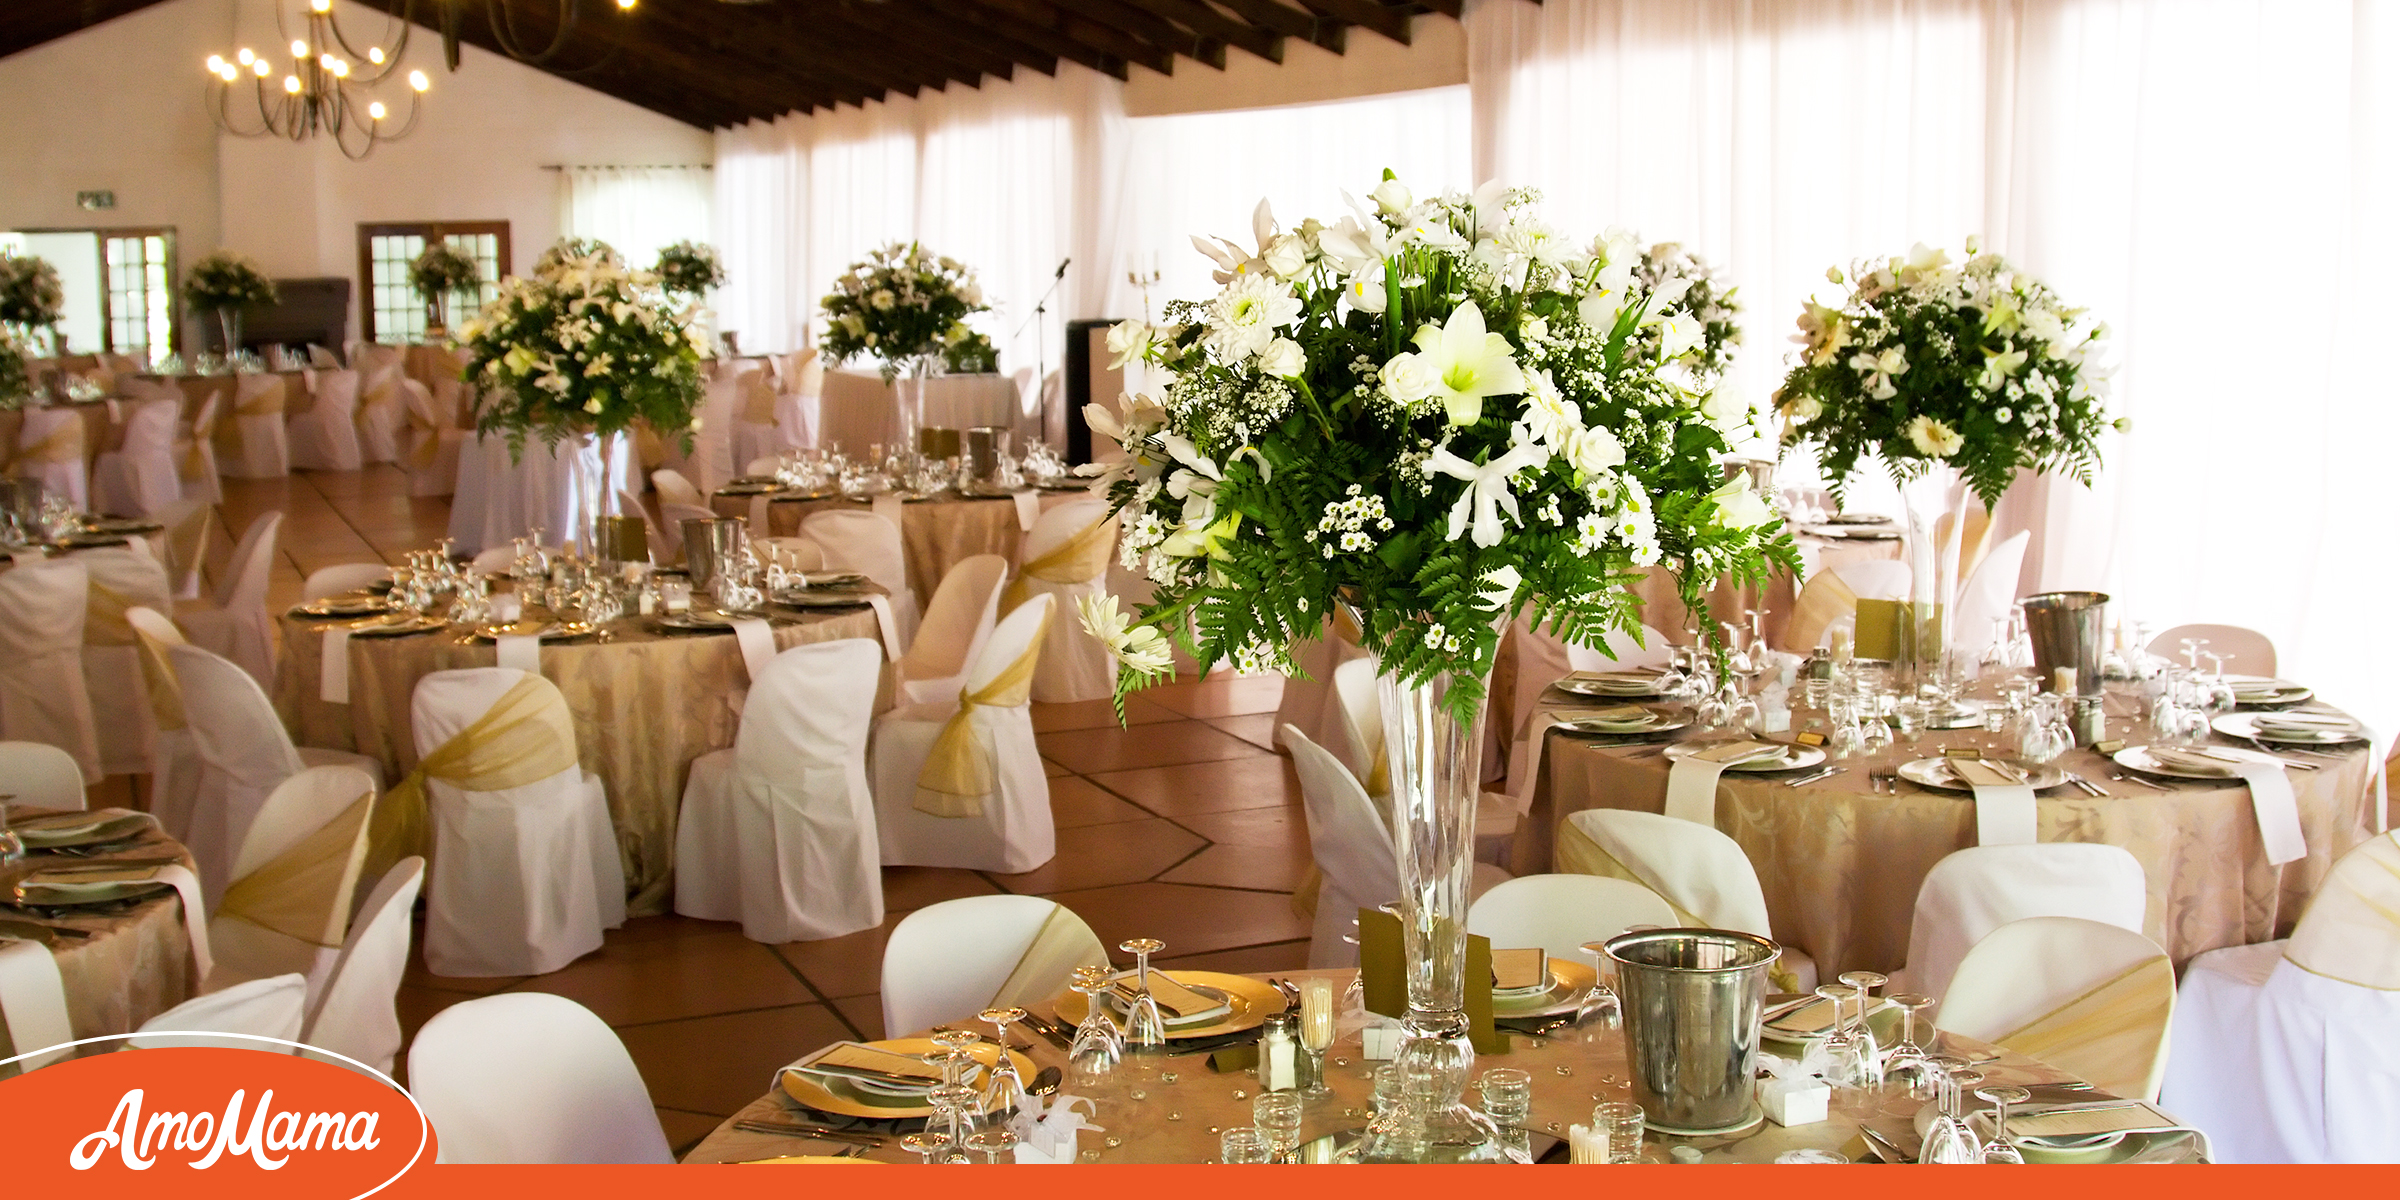 Indoor wedding venue | Source: Shutterstock